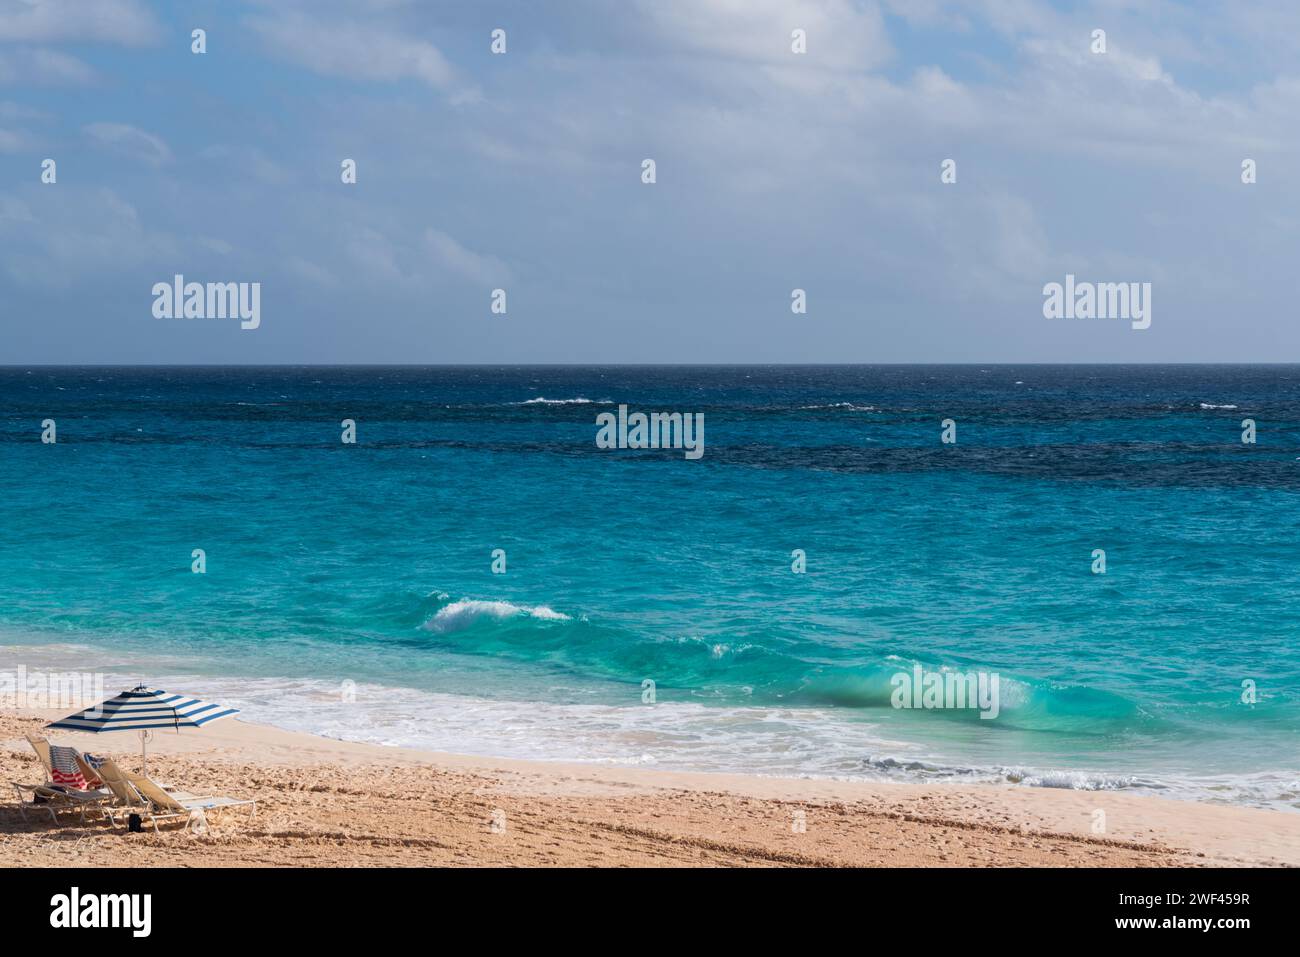 Tauchen Sie ein in die Schönheit von Bermudas Küstenparadies, wo Sandstrände auf die azurblaue Schönheit des Ozeans treffen, in einem tropischen Zufluchtsort der Glückseligkeit am Meer. Stockfoto